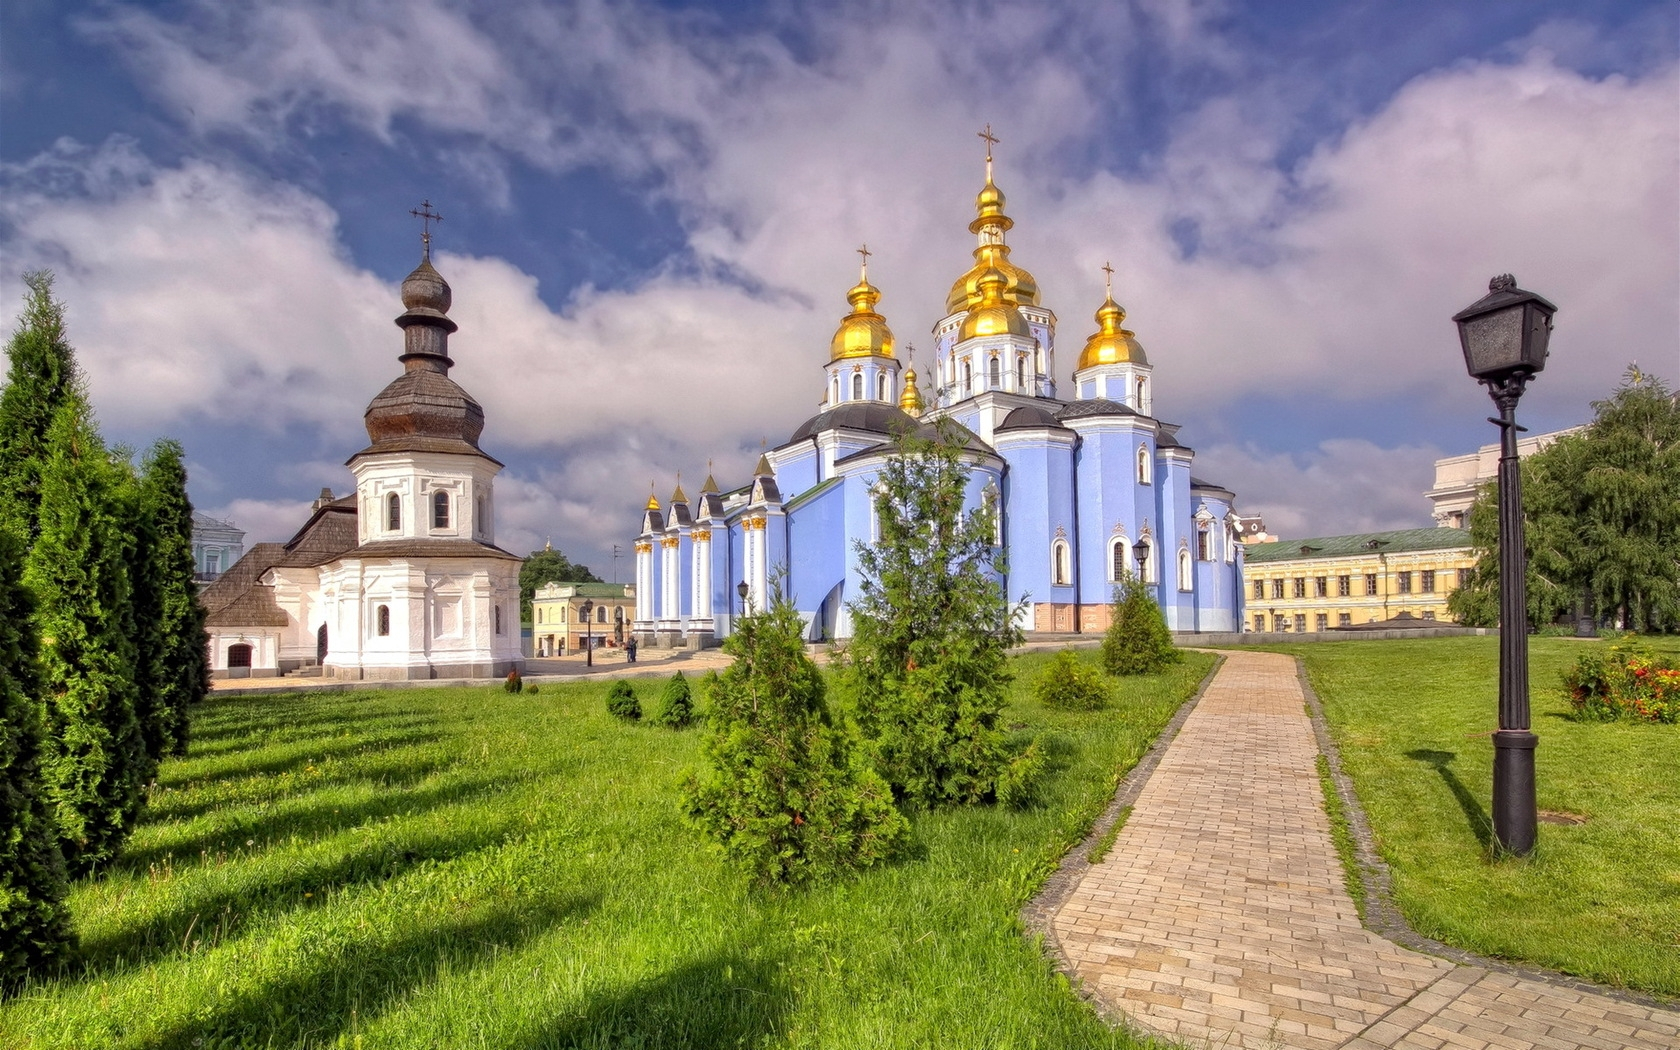 Особенность ранней церковной архитектуры Древней Руси